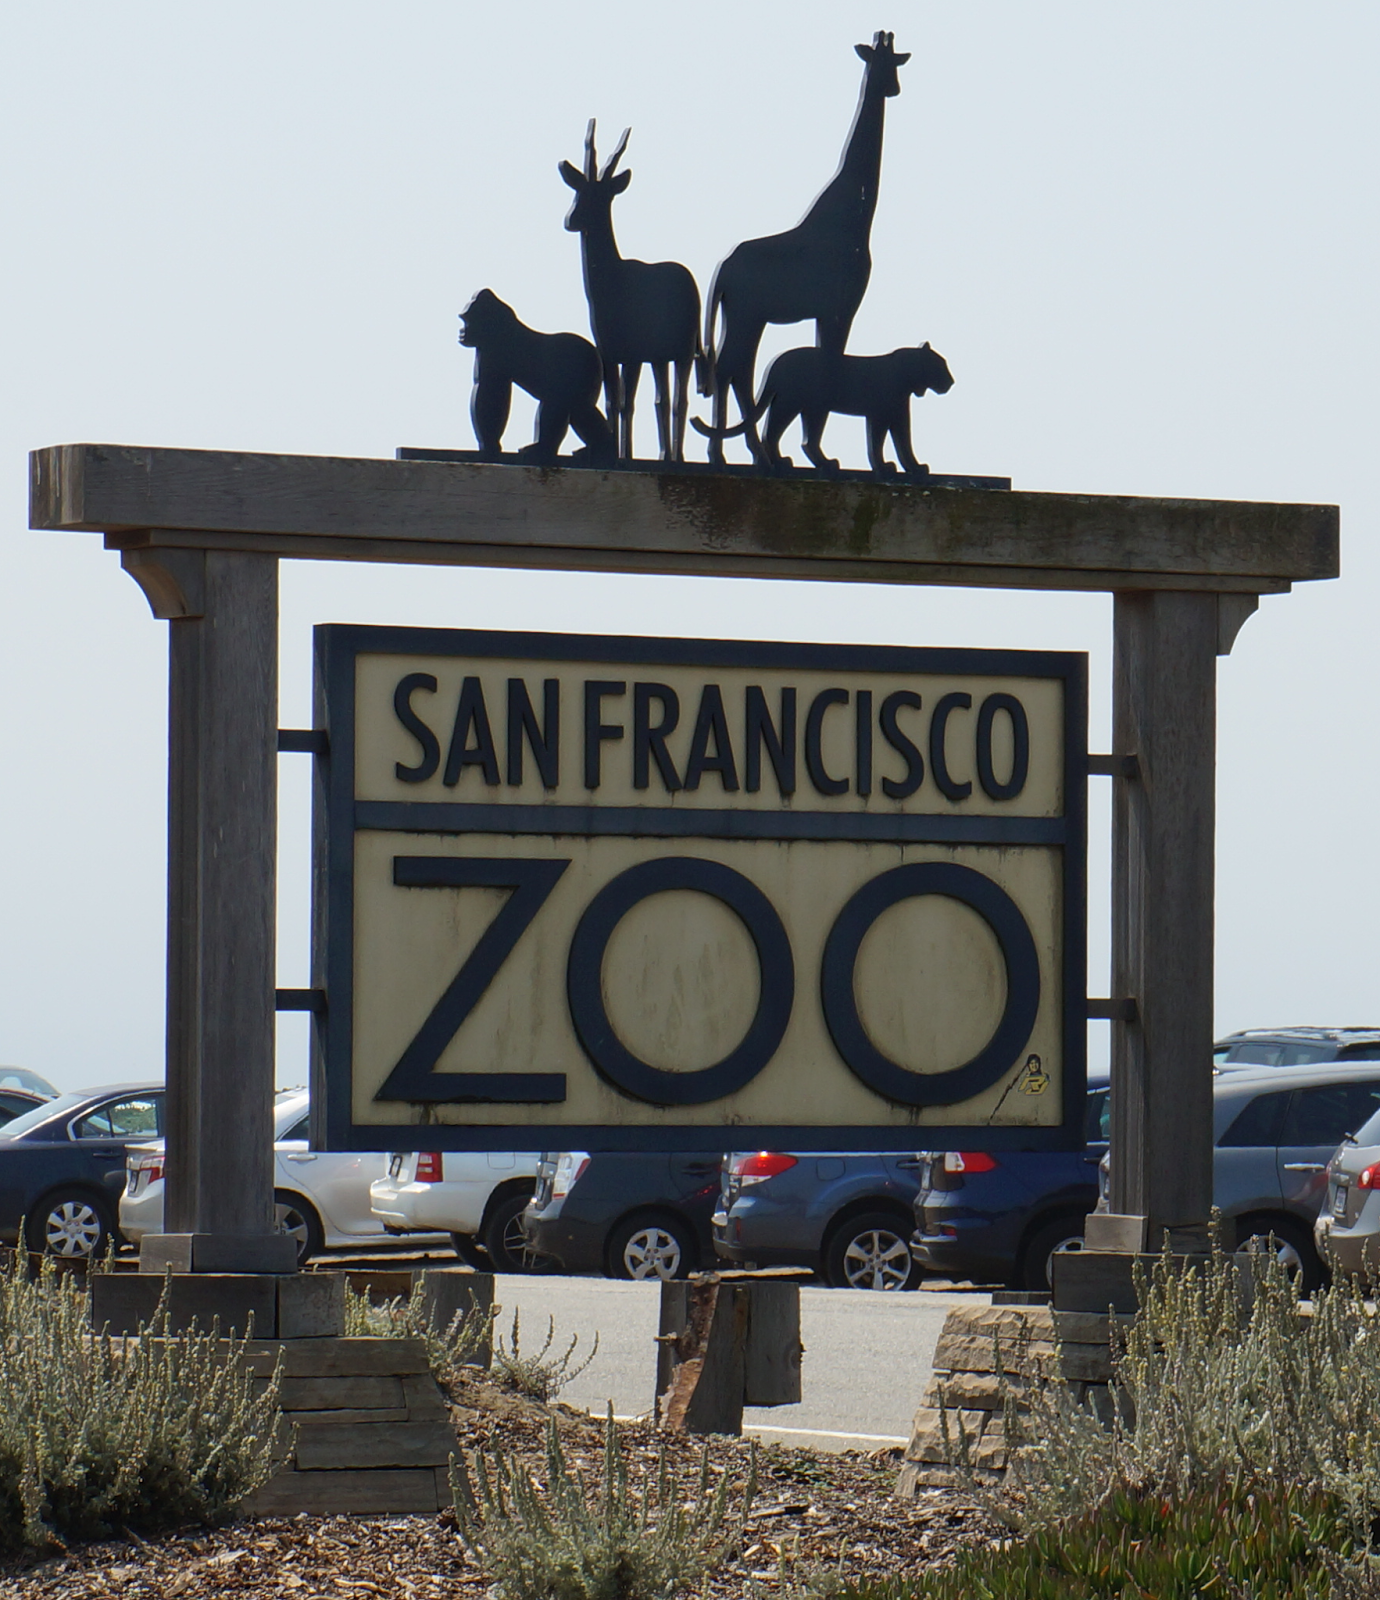 Exploring the San Francisco Zoo